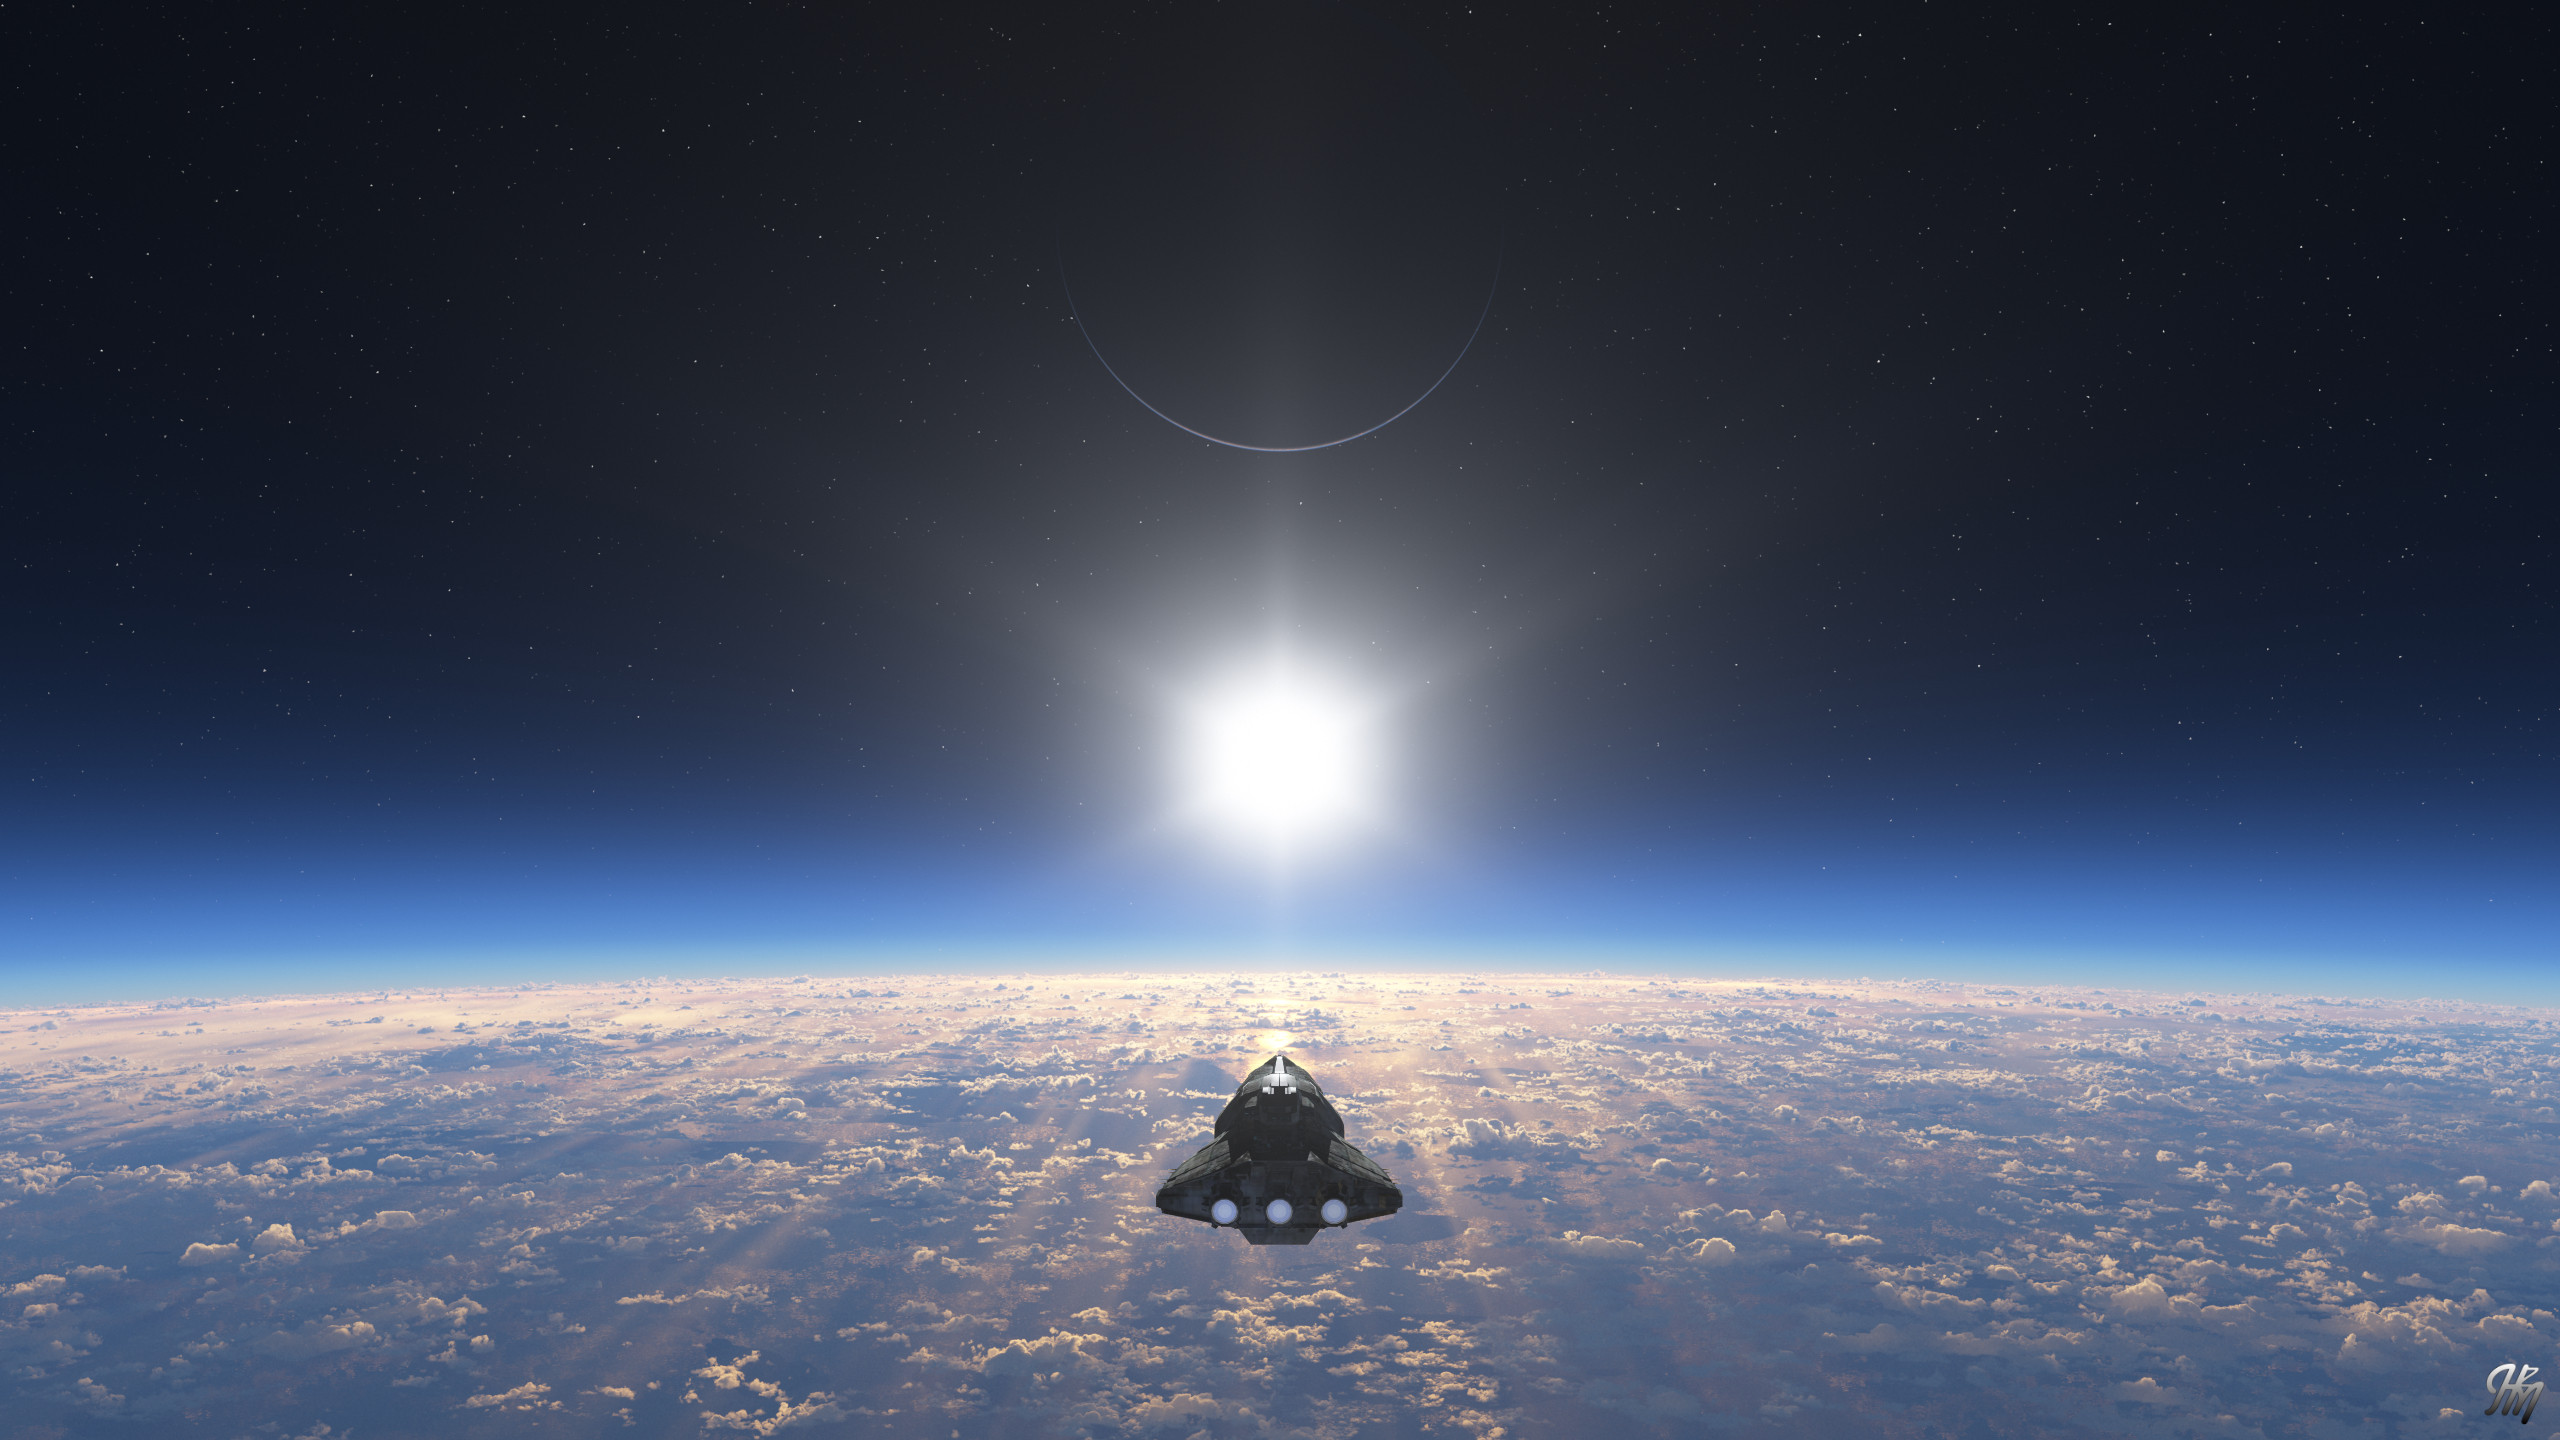 Orbital Sunrise
20200414TG